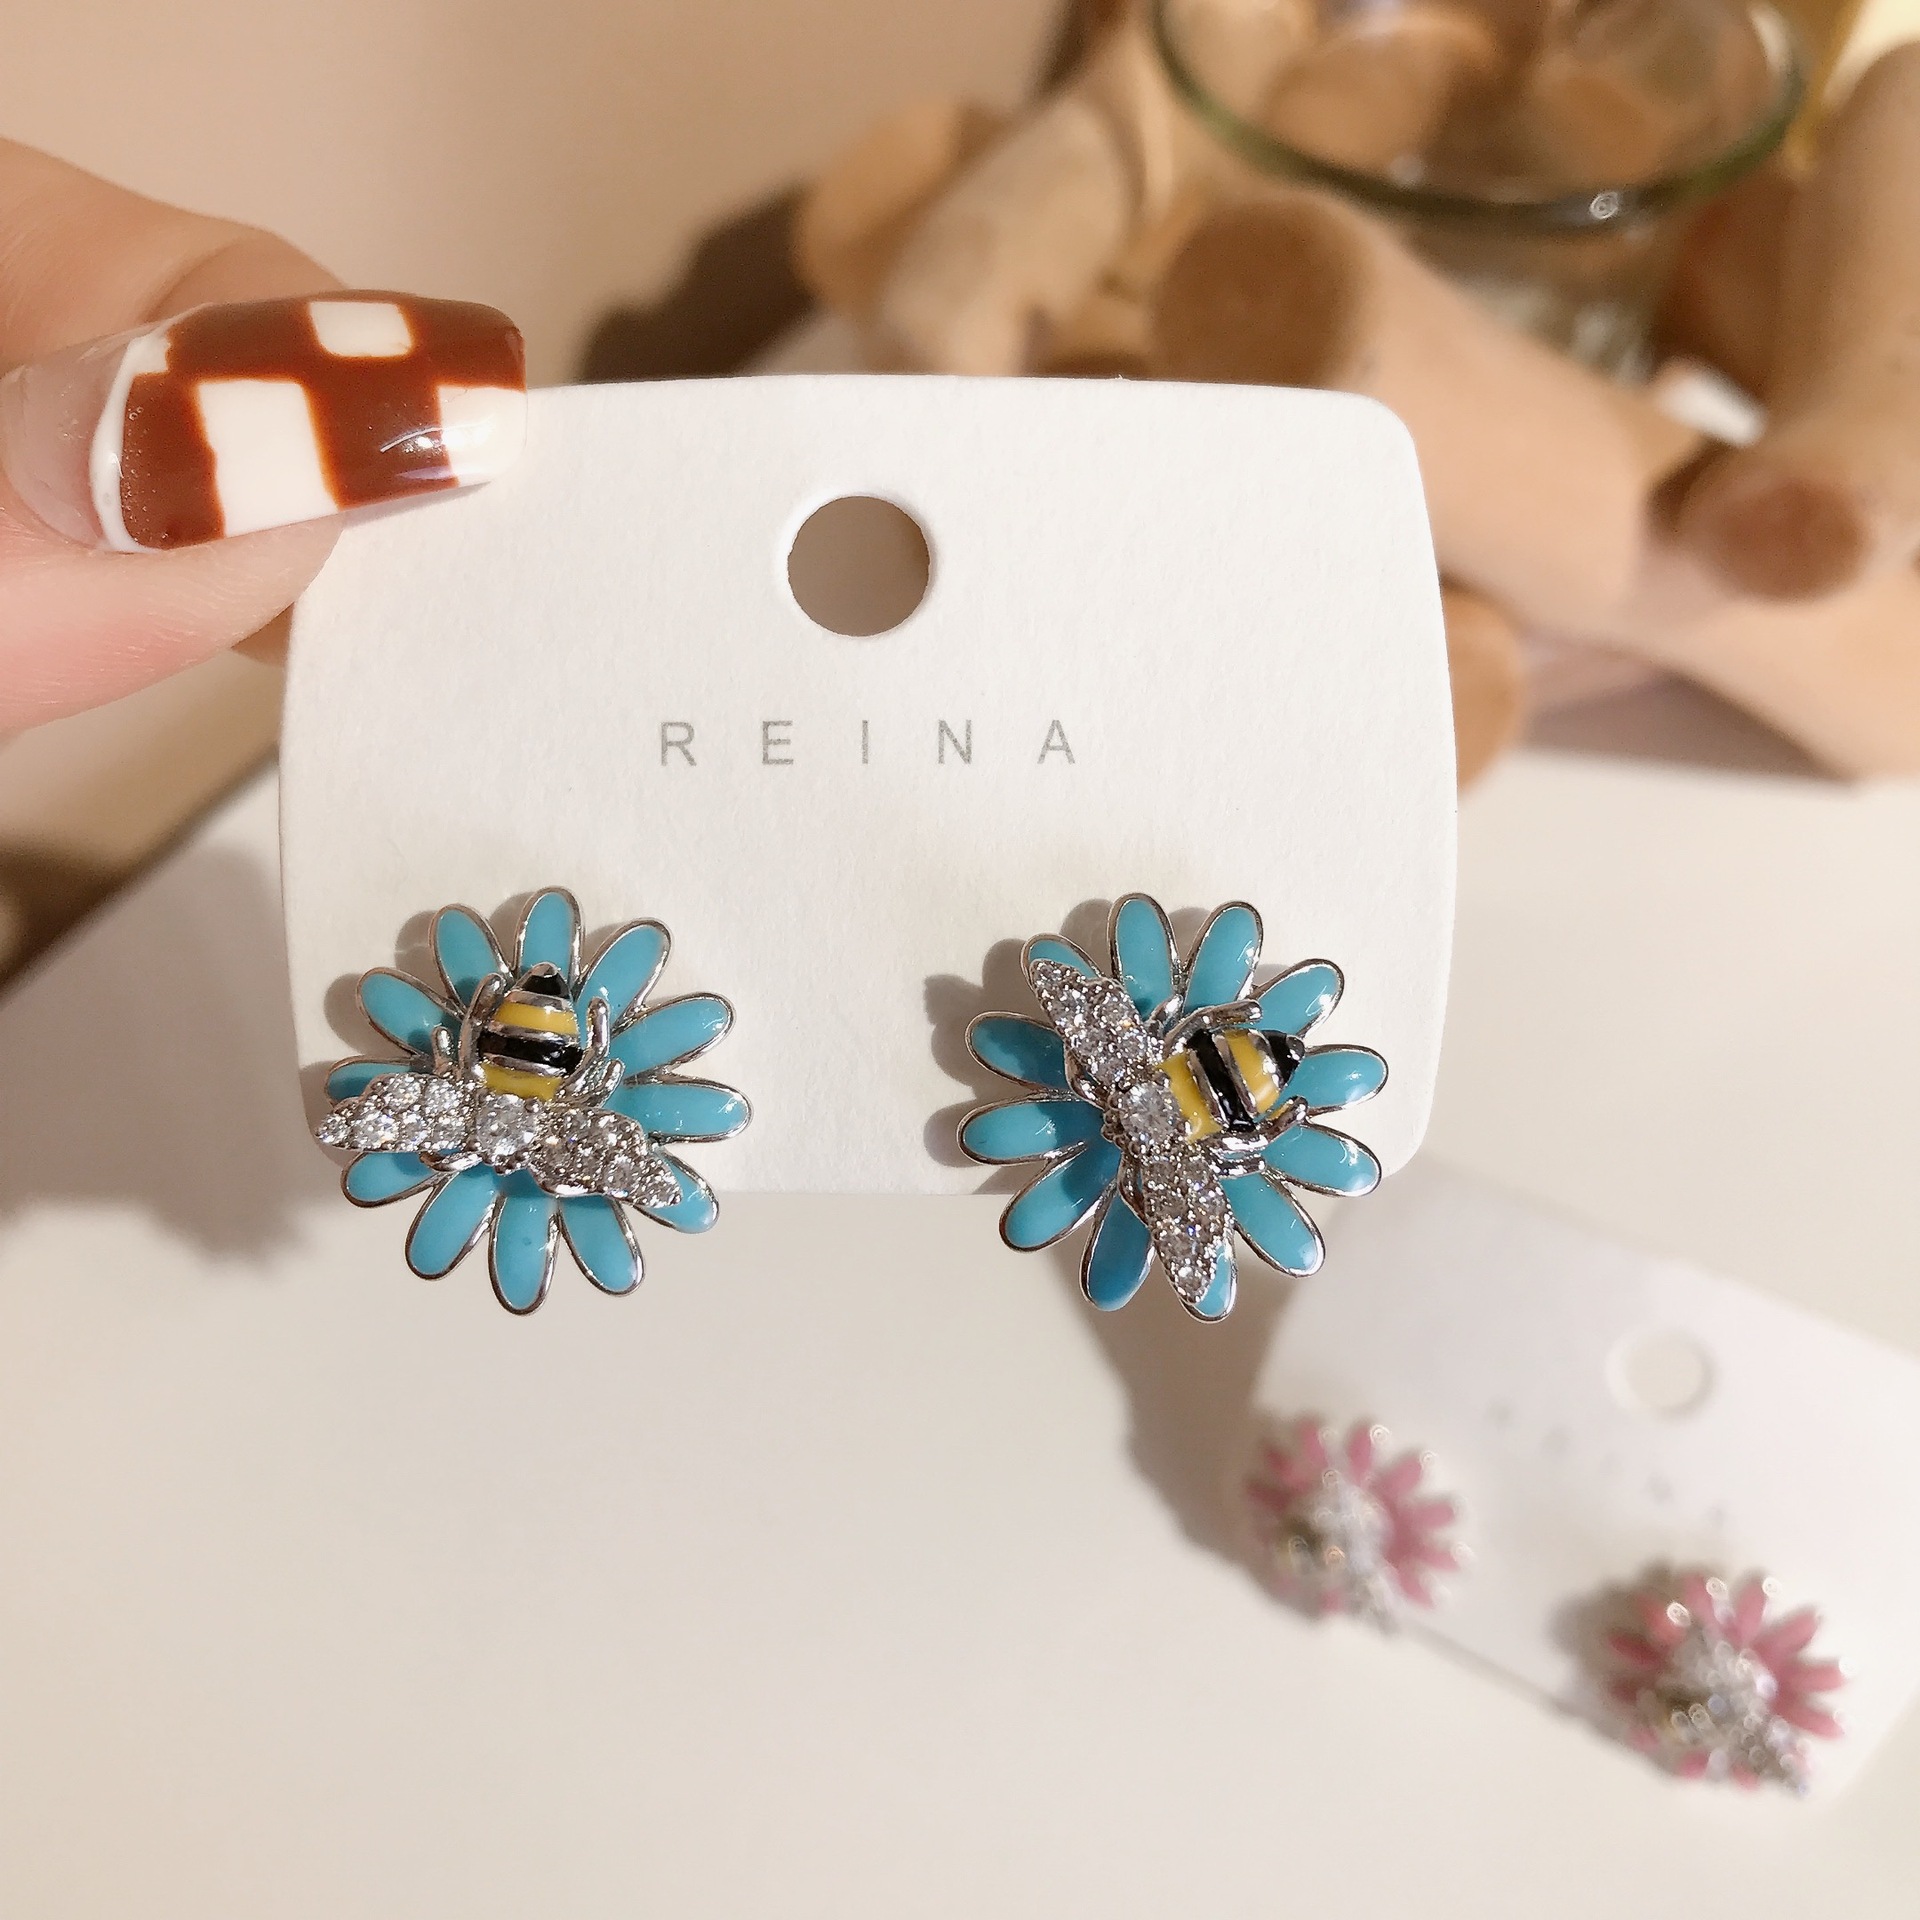 Bee Stud Earrings Special Interest Light Luxury Oil-Spot Glaze Flowers Stud Earrings Fashionable and Versatile Earrings